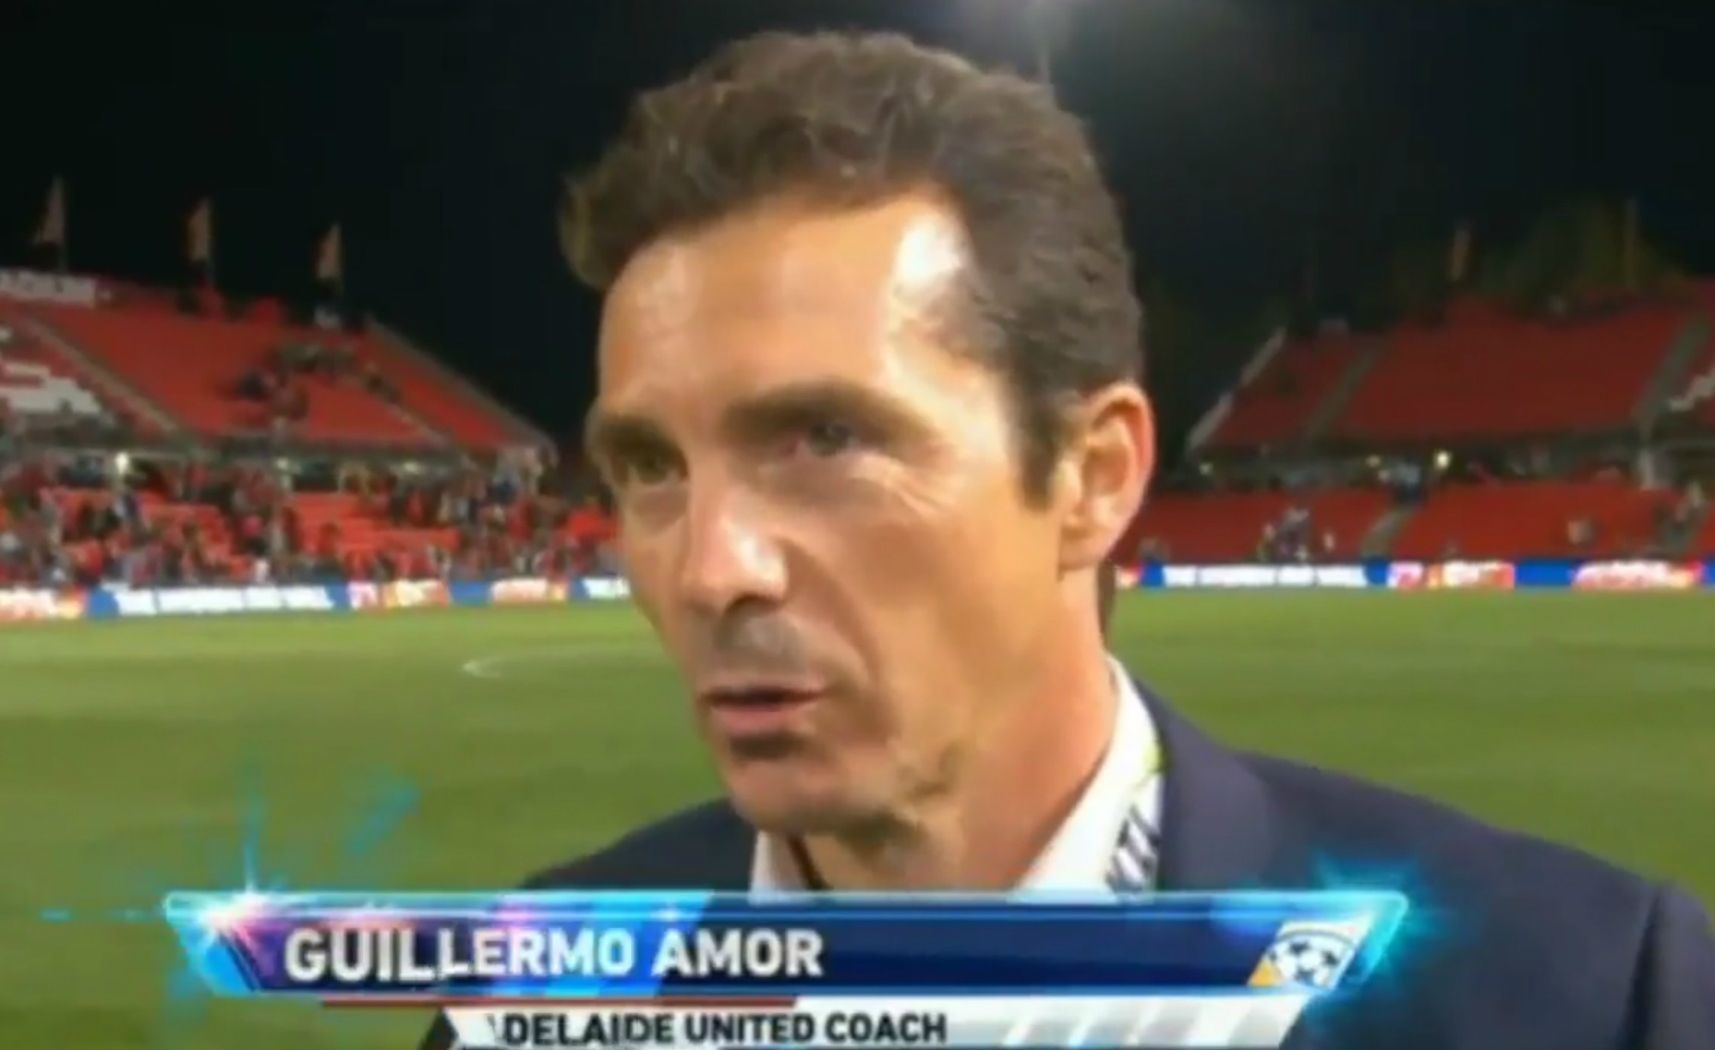 Guillermo Amor s'embolica amb l'anglès en una entrevista